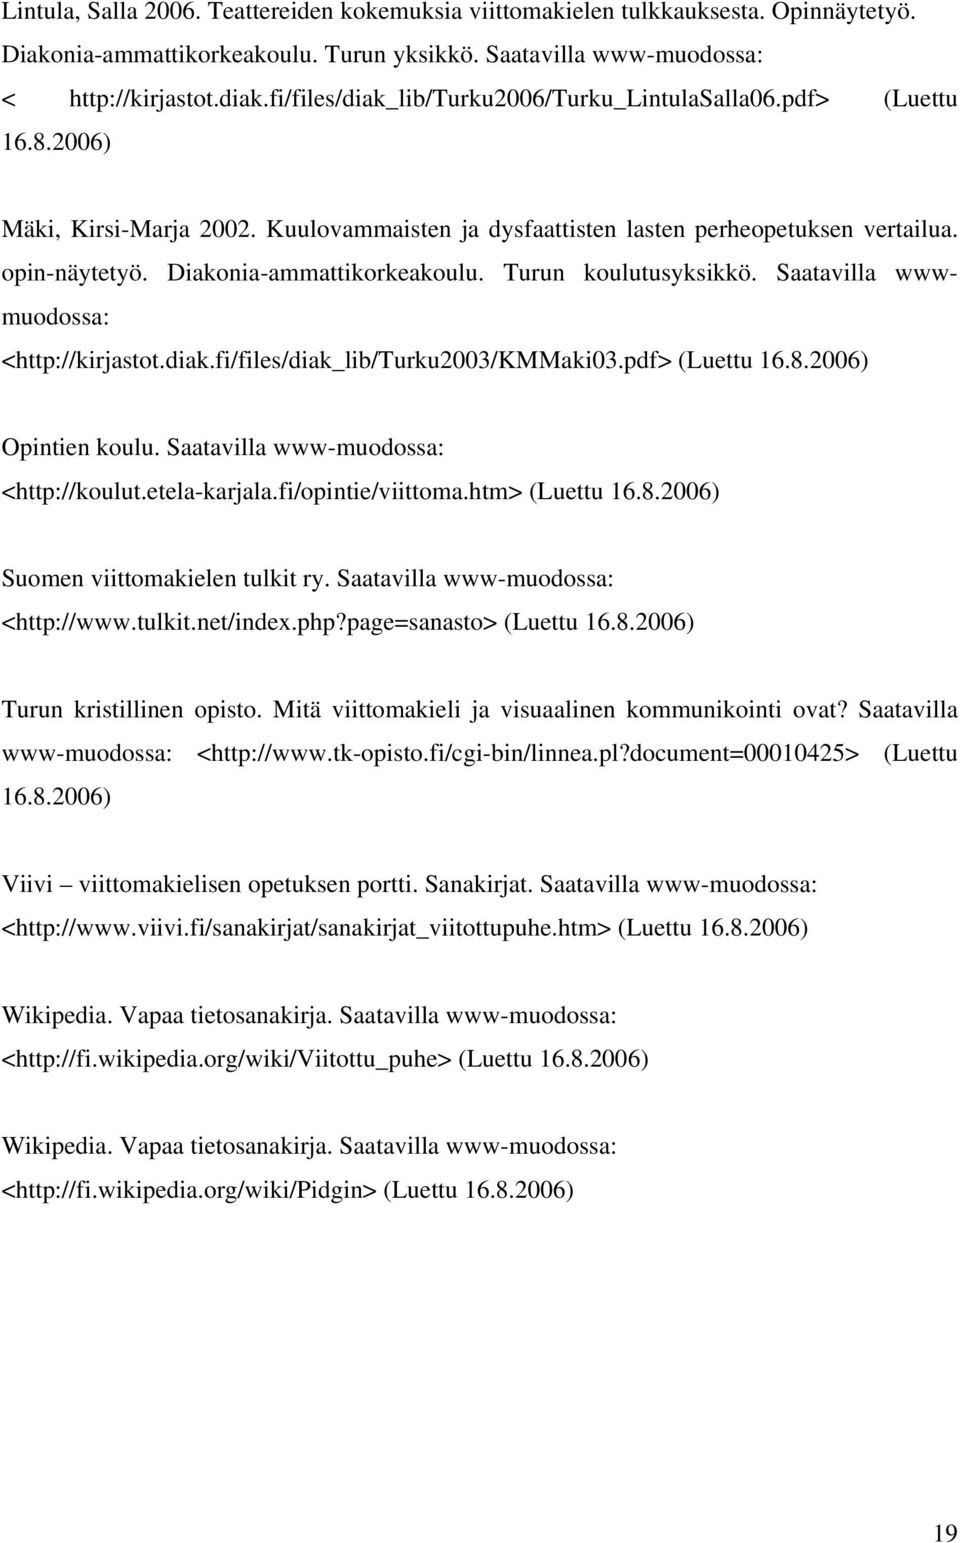 Diakonia-ammattikorkeakoulu. Turun koulutusyksikkö. Saatavilla wwwmuodossa: <http://kirjastot.diak.fi/files/diak_lib/turku2003/kmmaki03.pdf> (Luettu 16.8.2006) Opintien koulu.